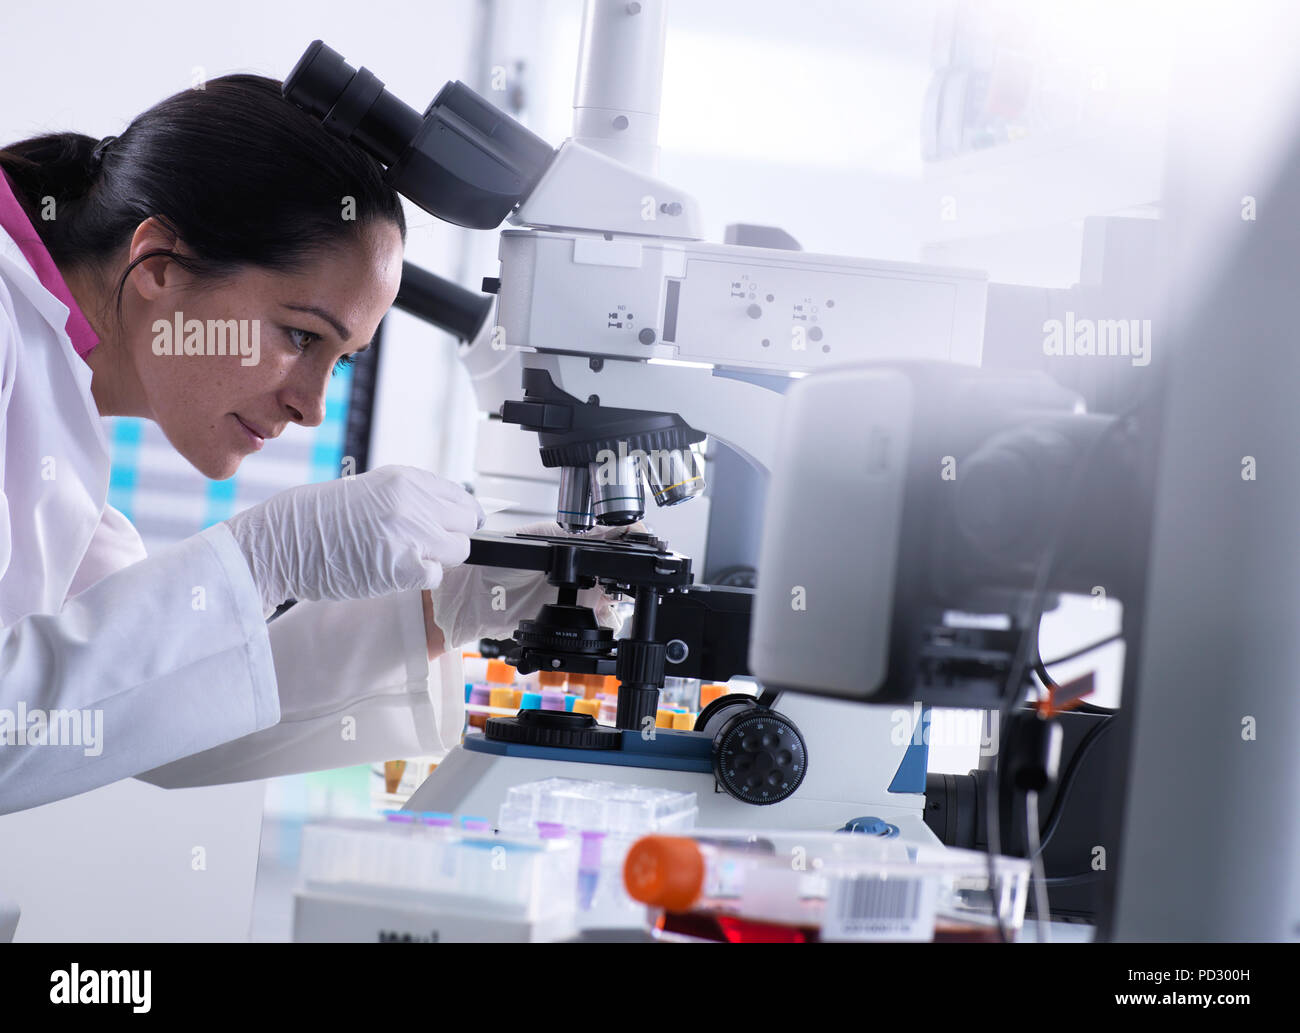 Portaobjetos De Vidrio Científico Montado En Un Microscopio Reales  Utilizados En La Investigación Científica Para Ampliar E Inspeccionar Las  Bacterias Y La Estructura De La Célula Fotos, retratos, imágenes y  fotografía de